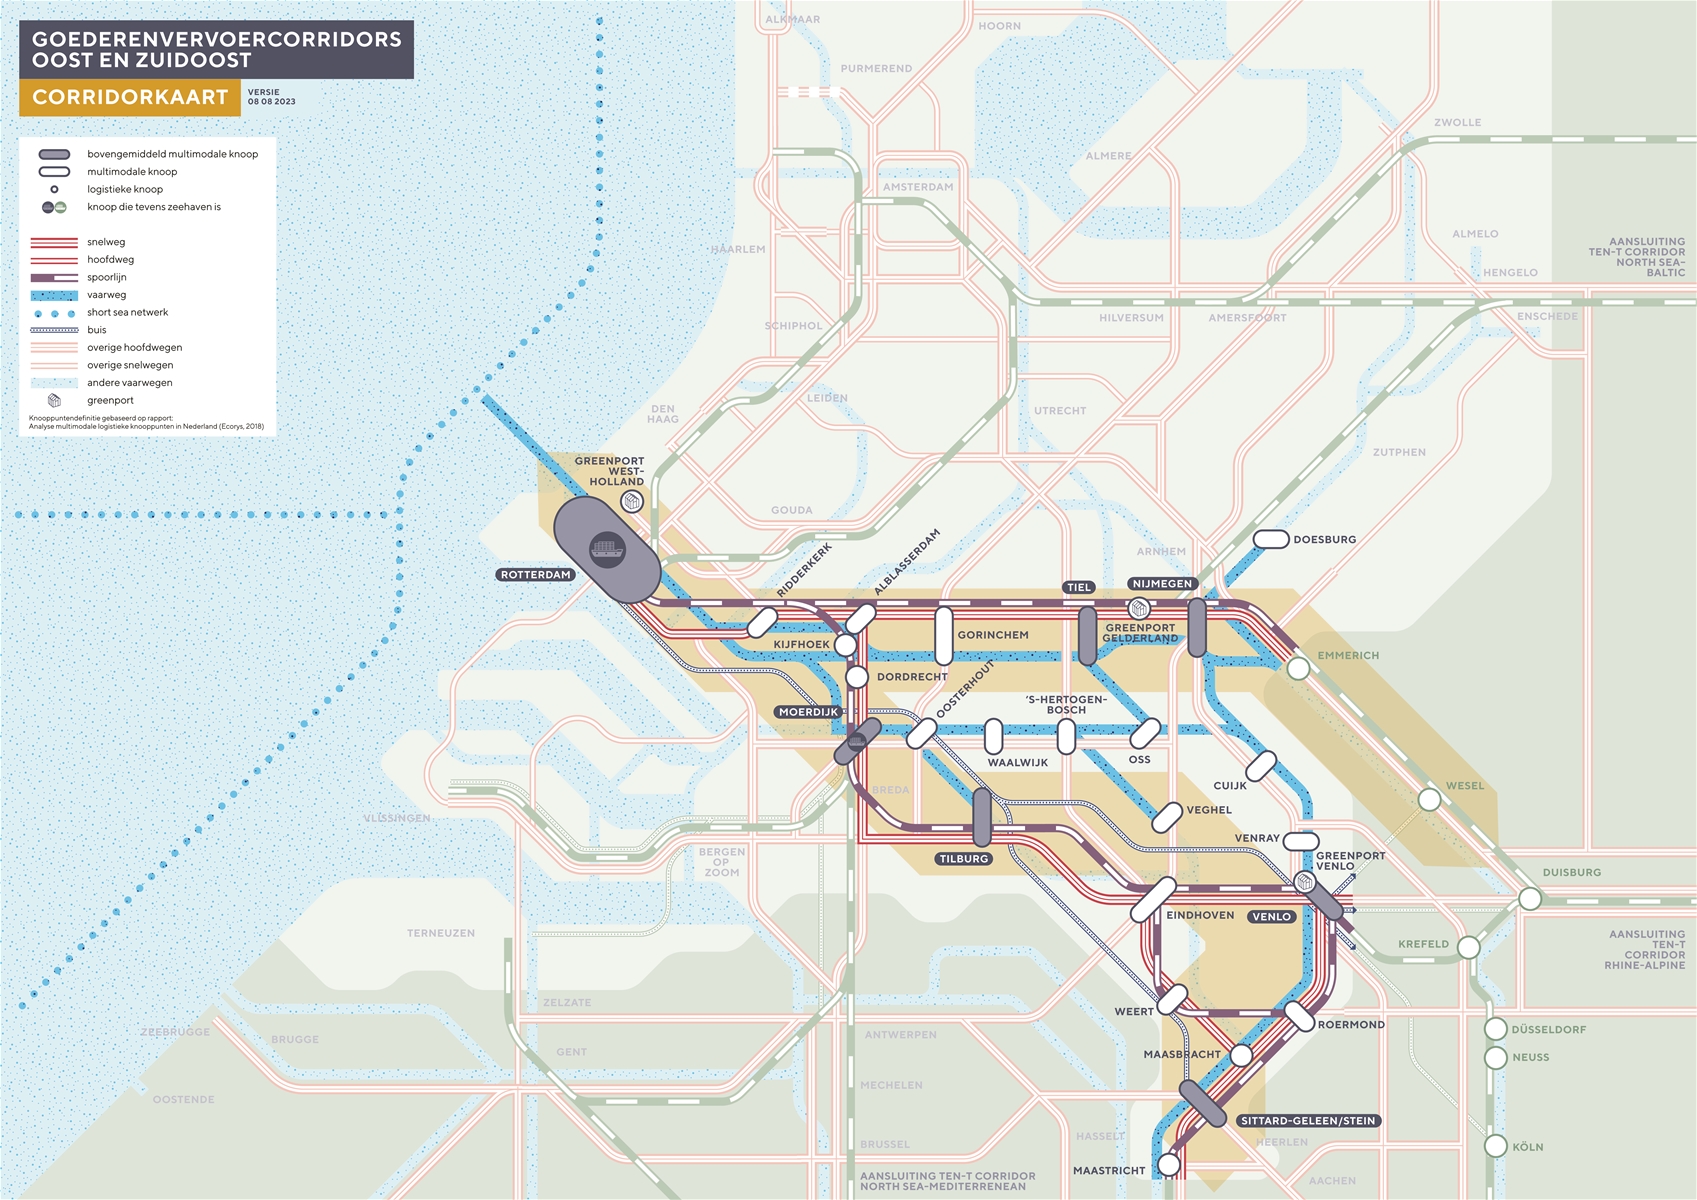 Metrokaart Goederenvervoercorridors Oost en Zuidoost 